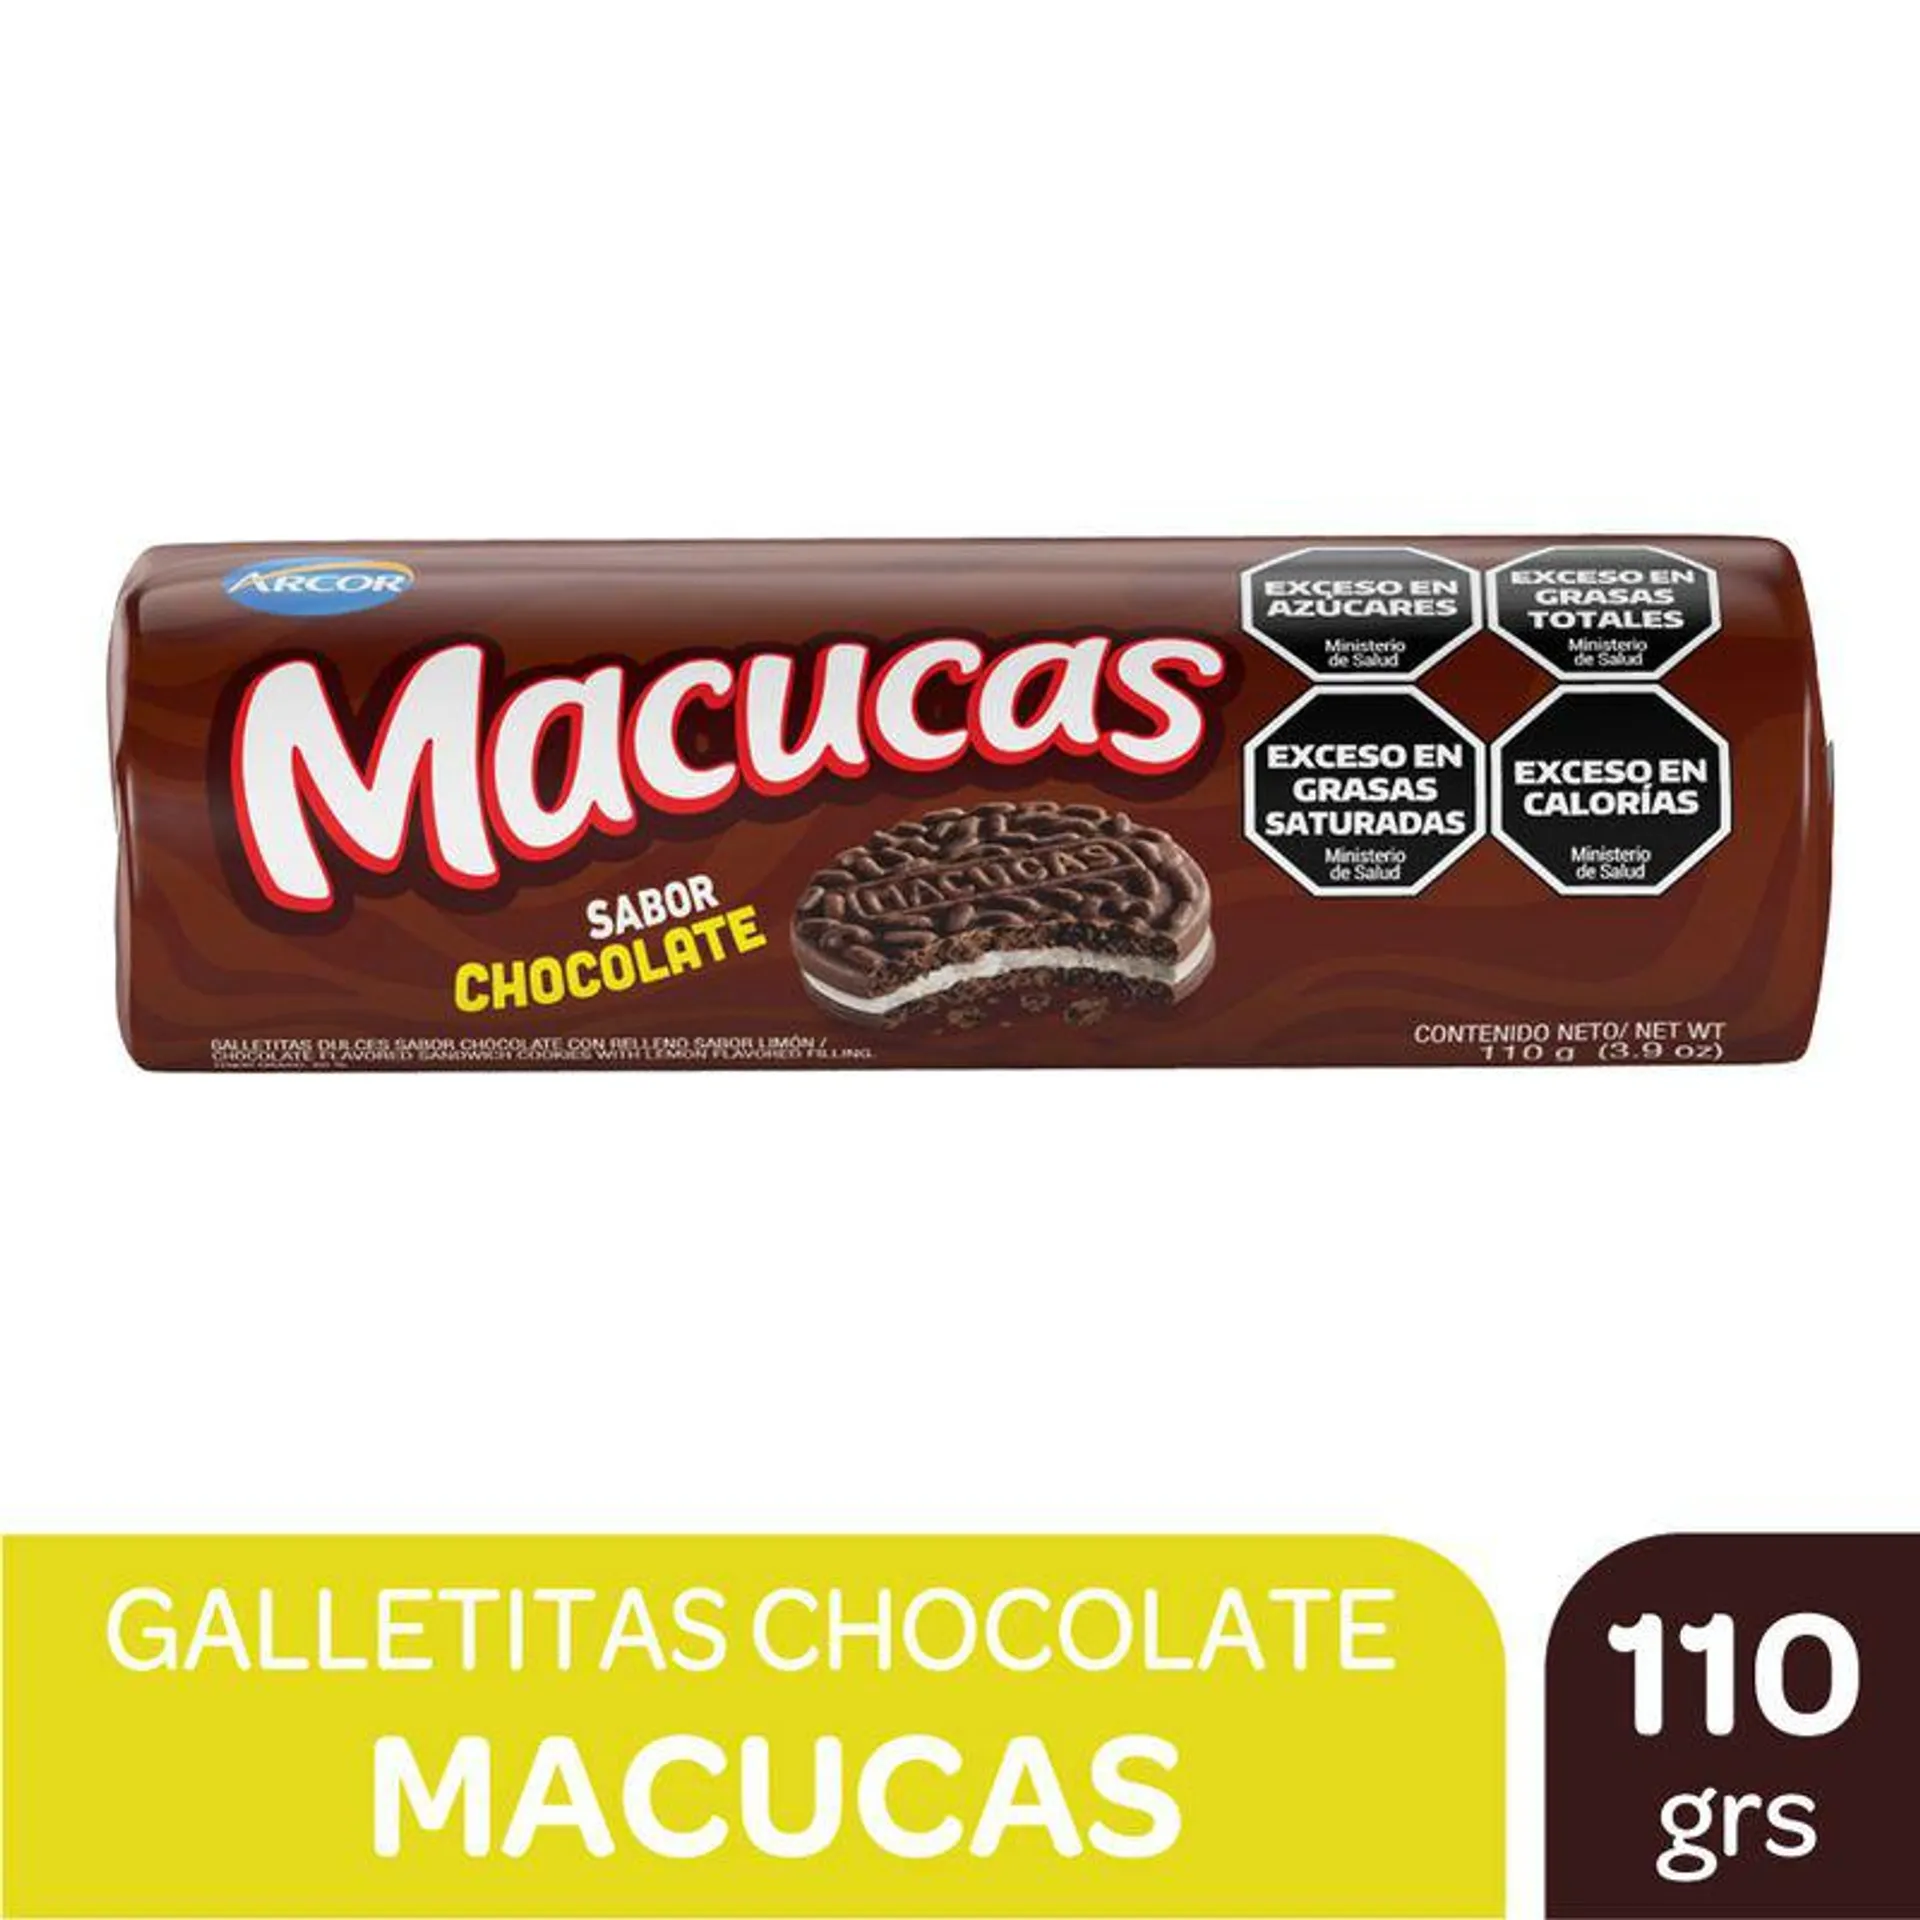 Galletitas chocolate rell vaini Macucas 110 g.